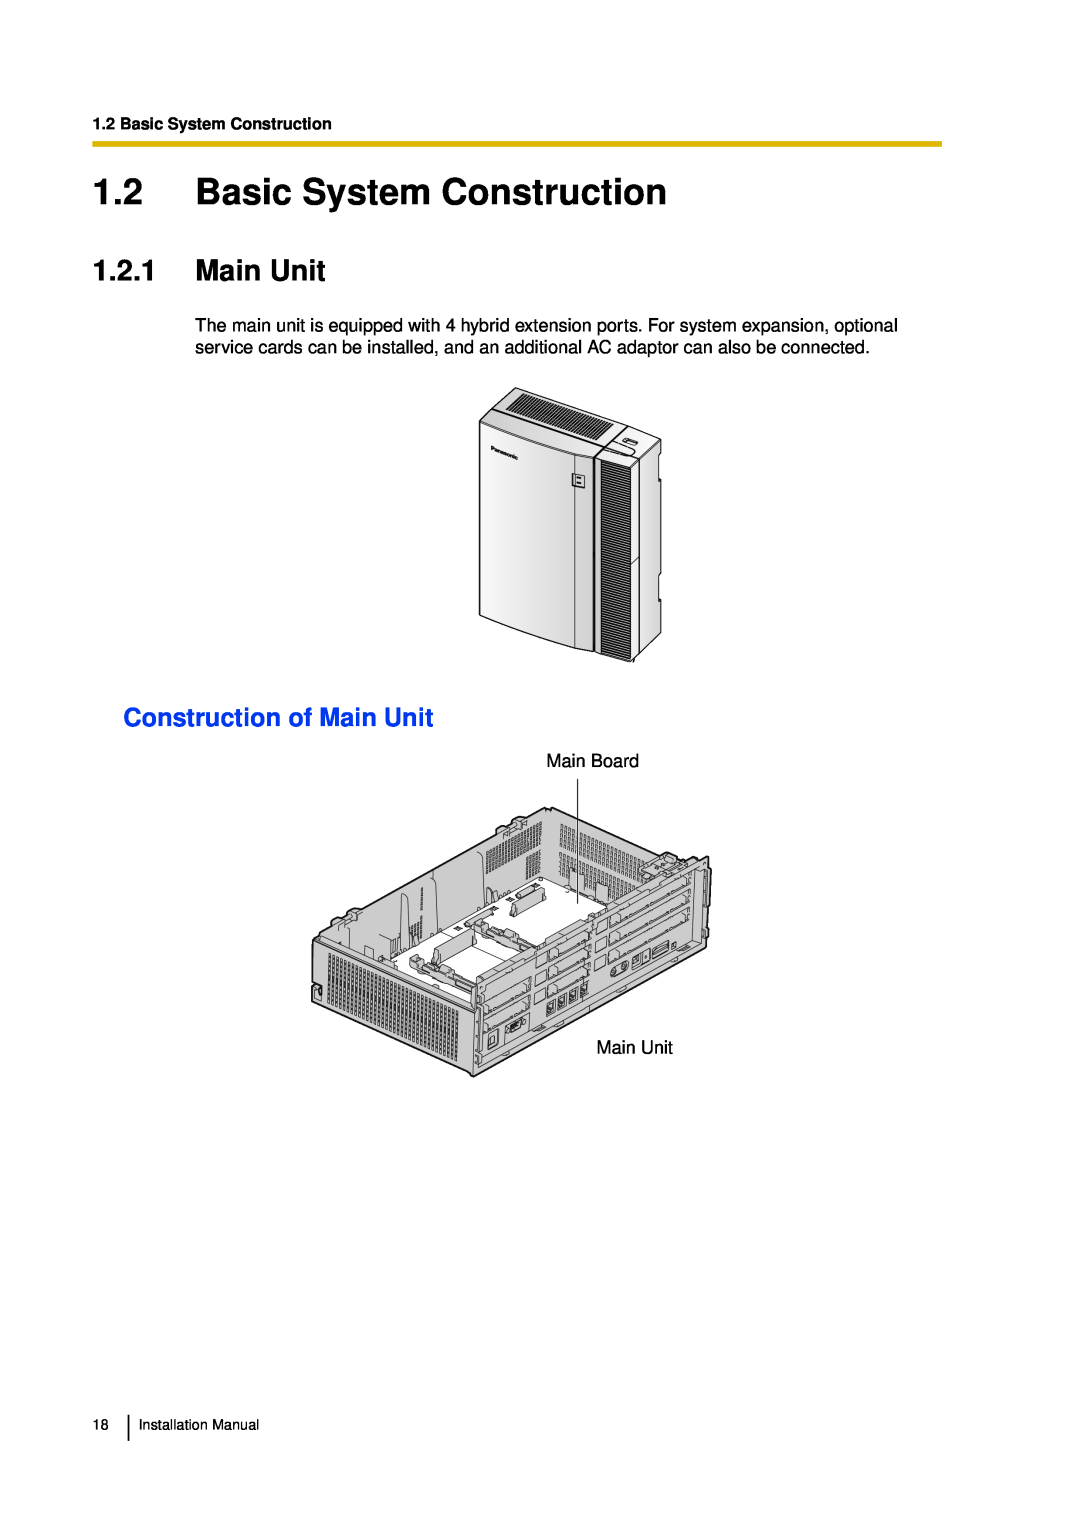 Panasonic KX-TDA30 installation manual 1.2Basic System Construction, 1.2.1Main Unit, Construction of Main Unit 